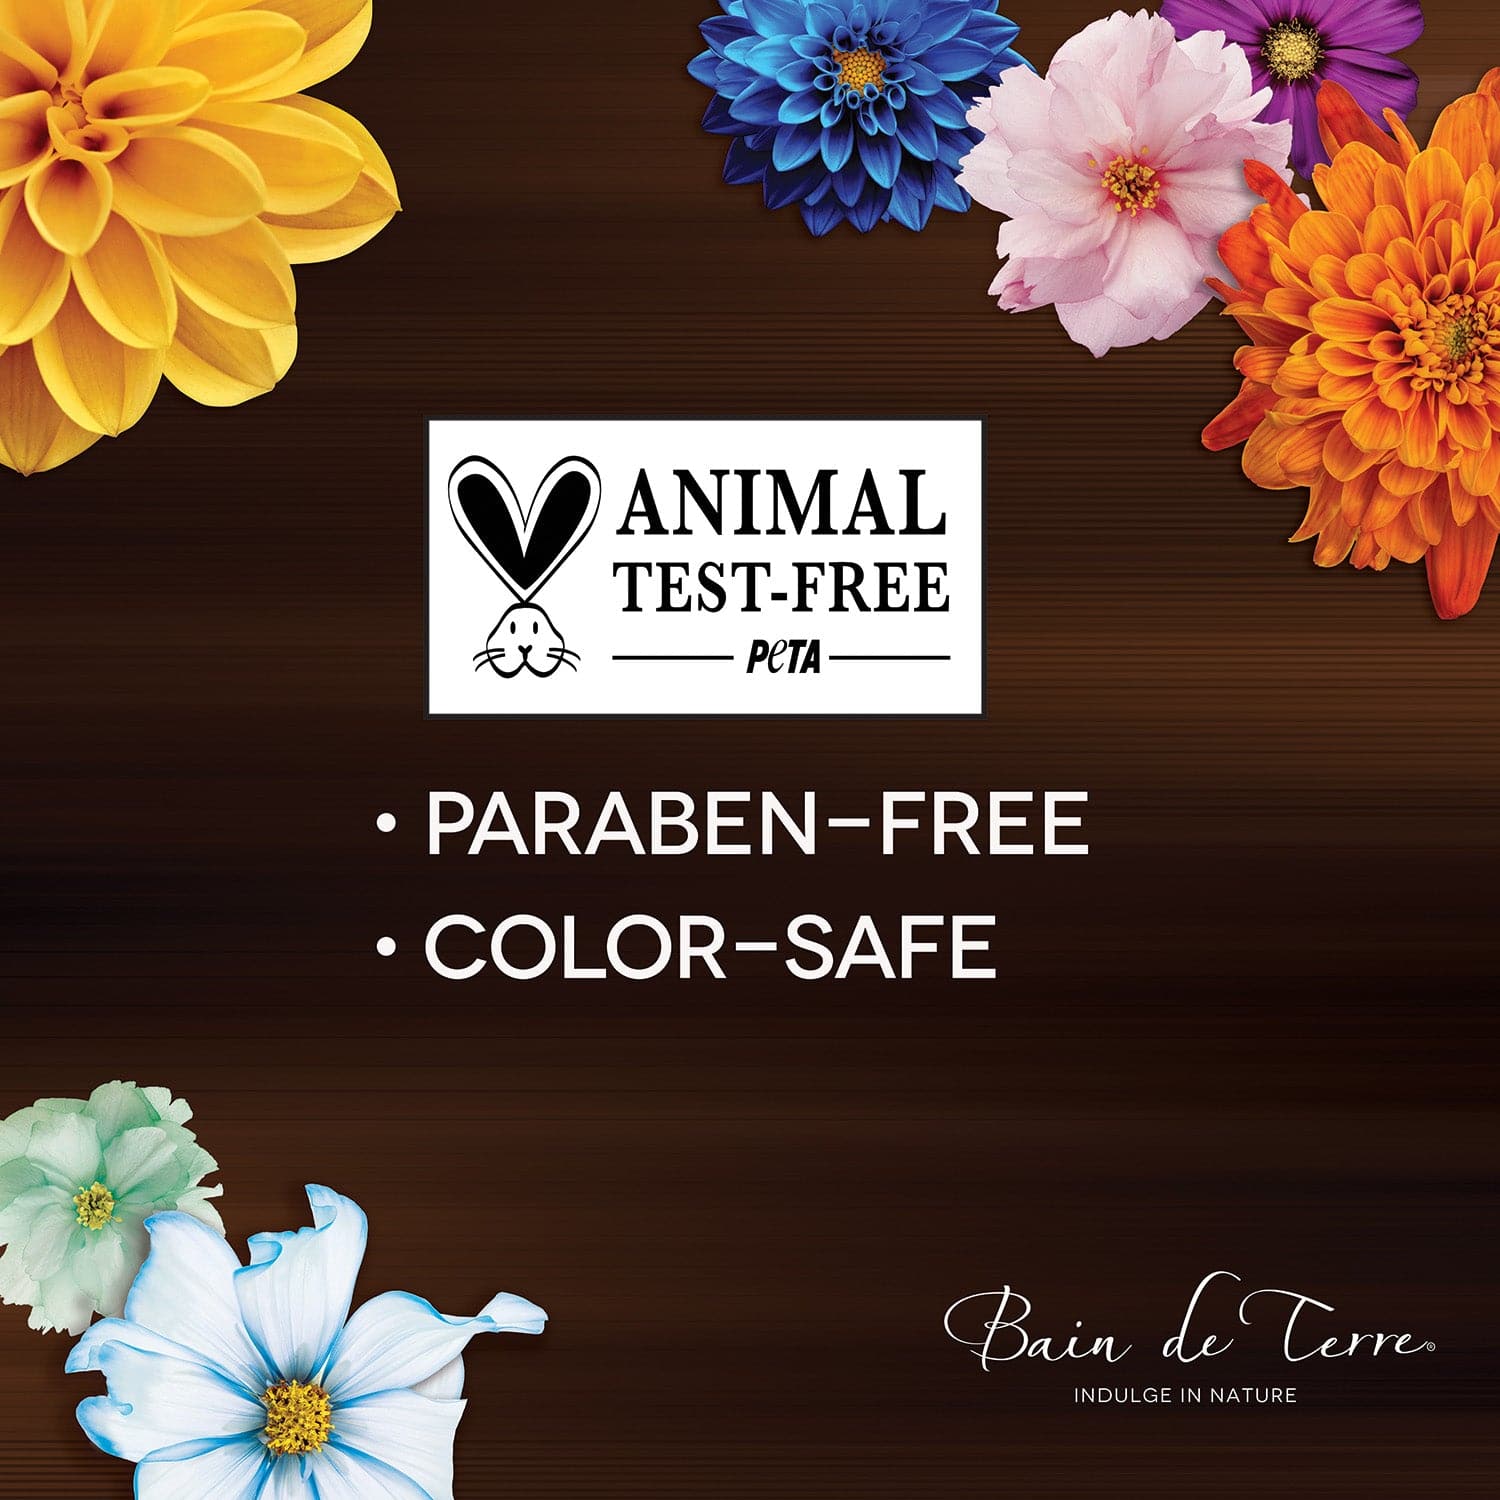 Animal Test-Free PETA; Paraben-Free; Color-Safe